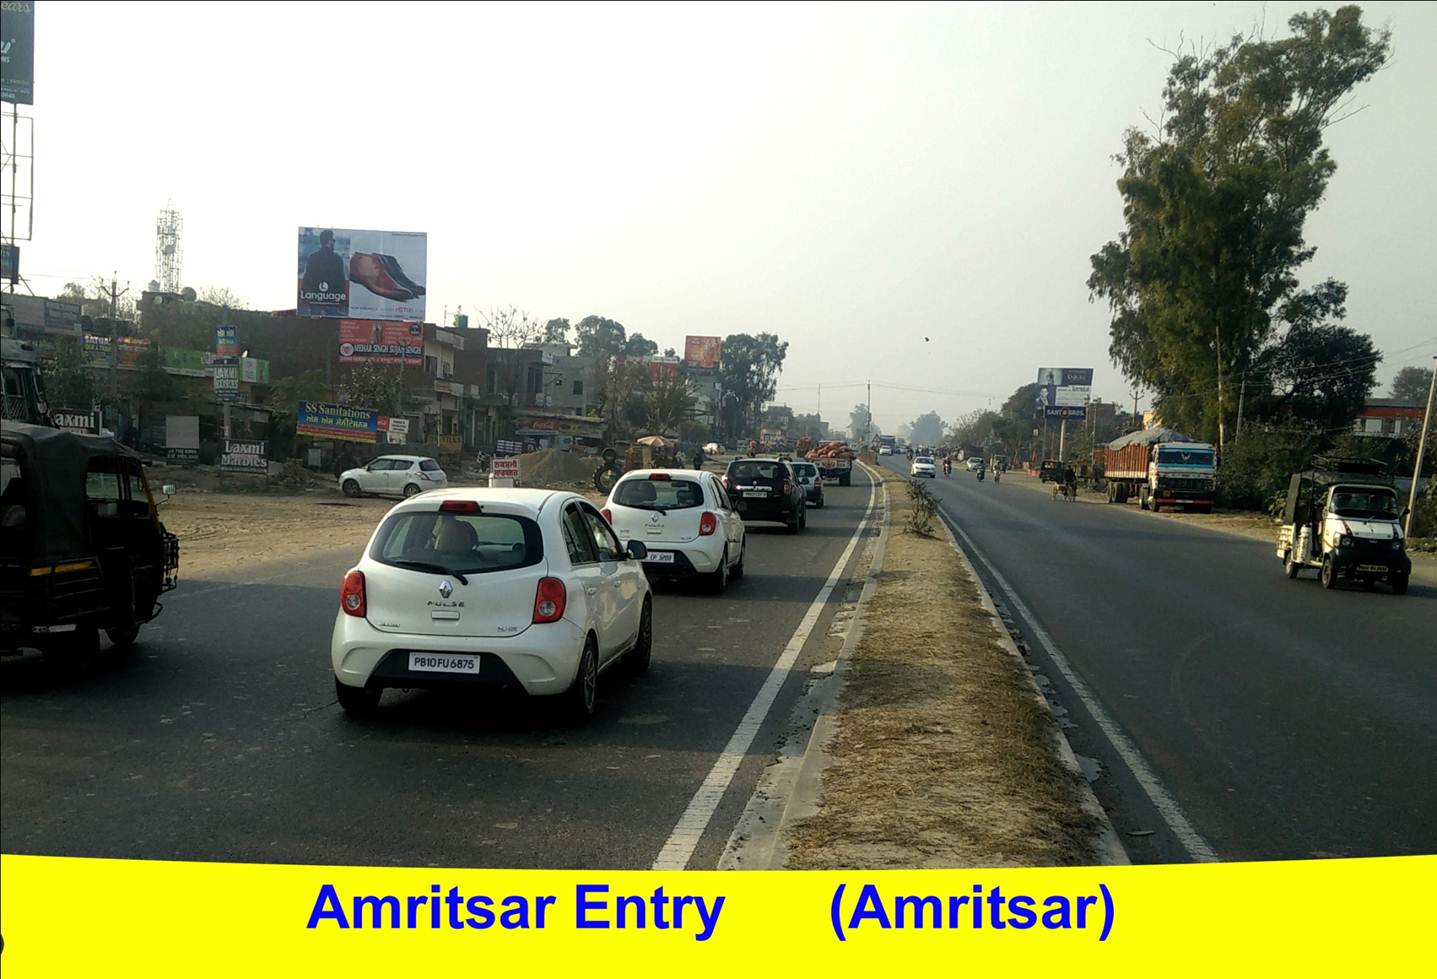 Airport Entry, Amritsar